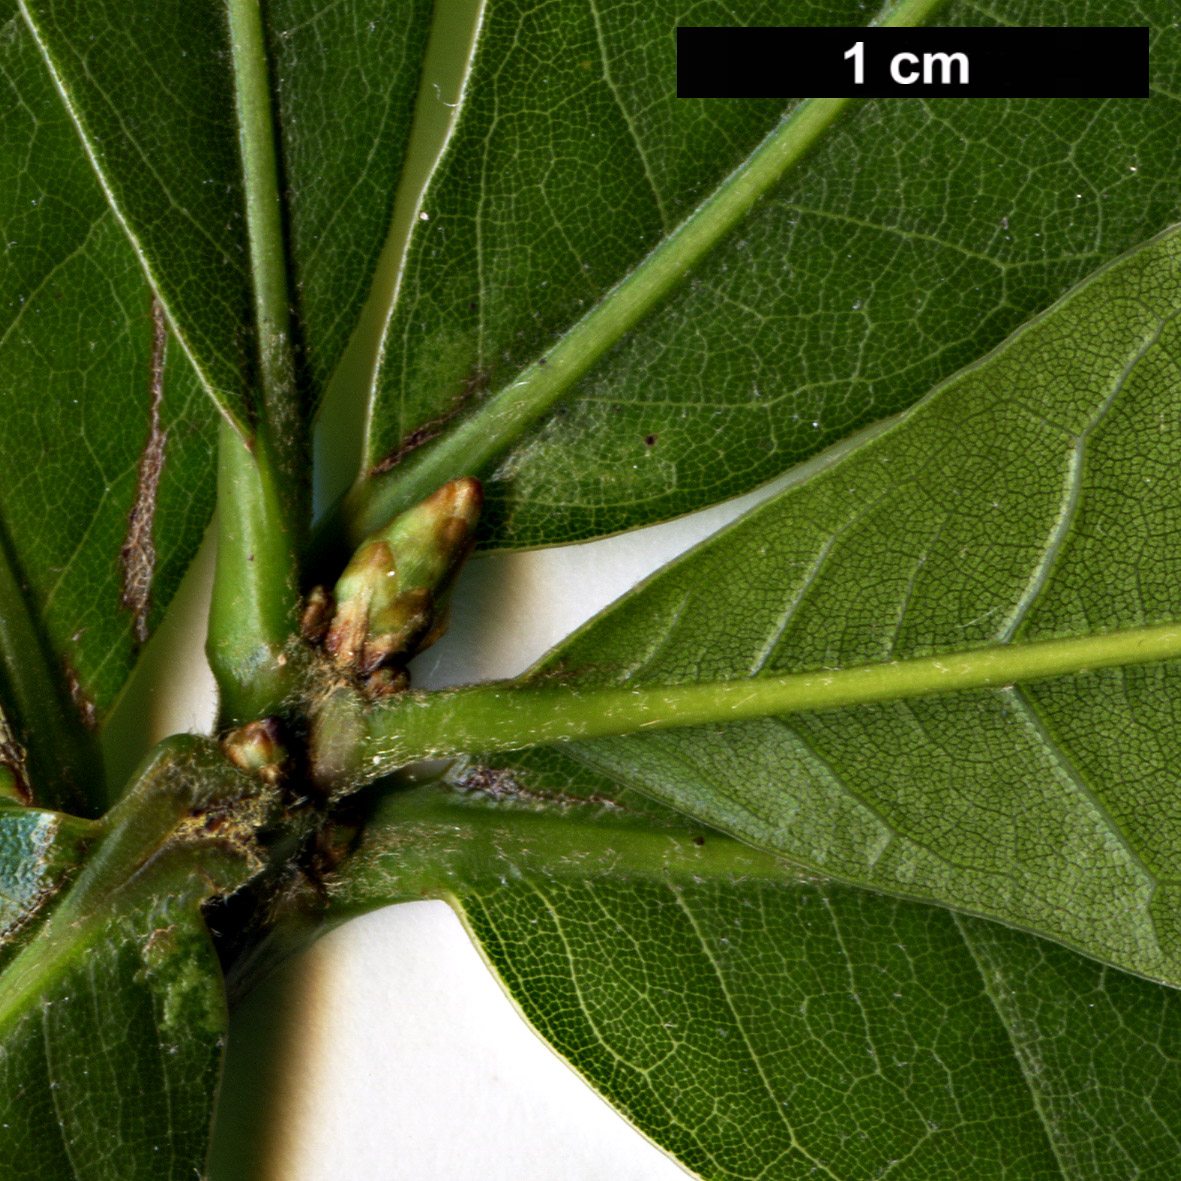 High resolution image: Family: Fagaceae - Genus: Quercus - Taxon: eugeniifolia